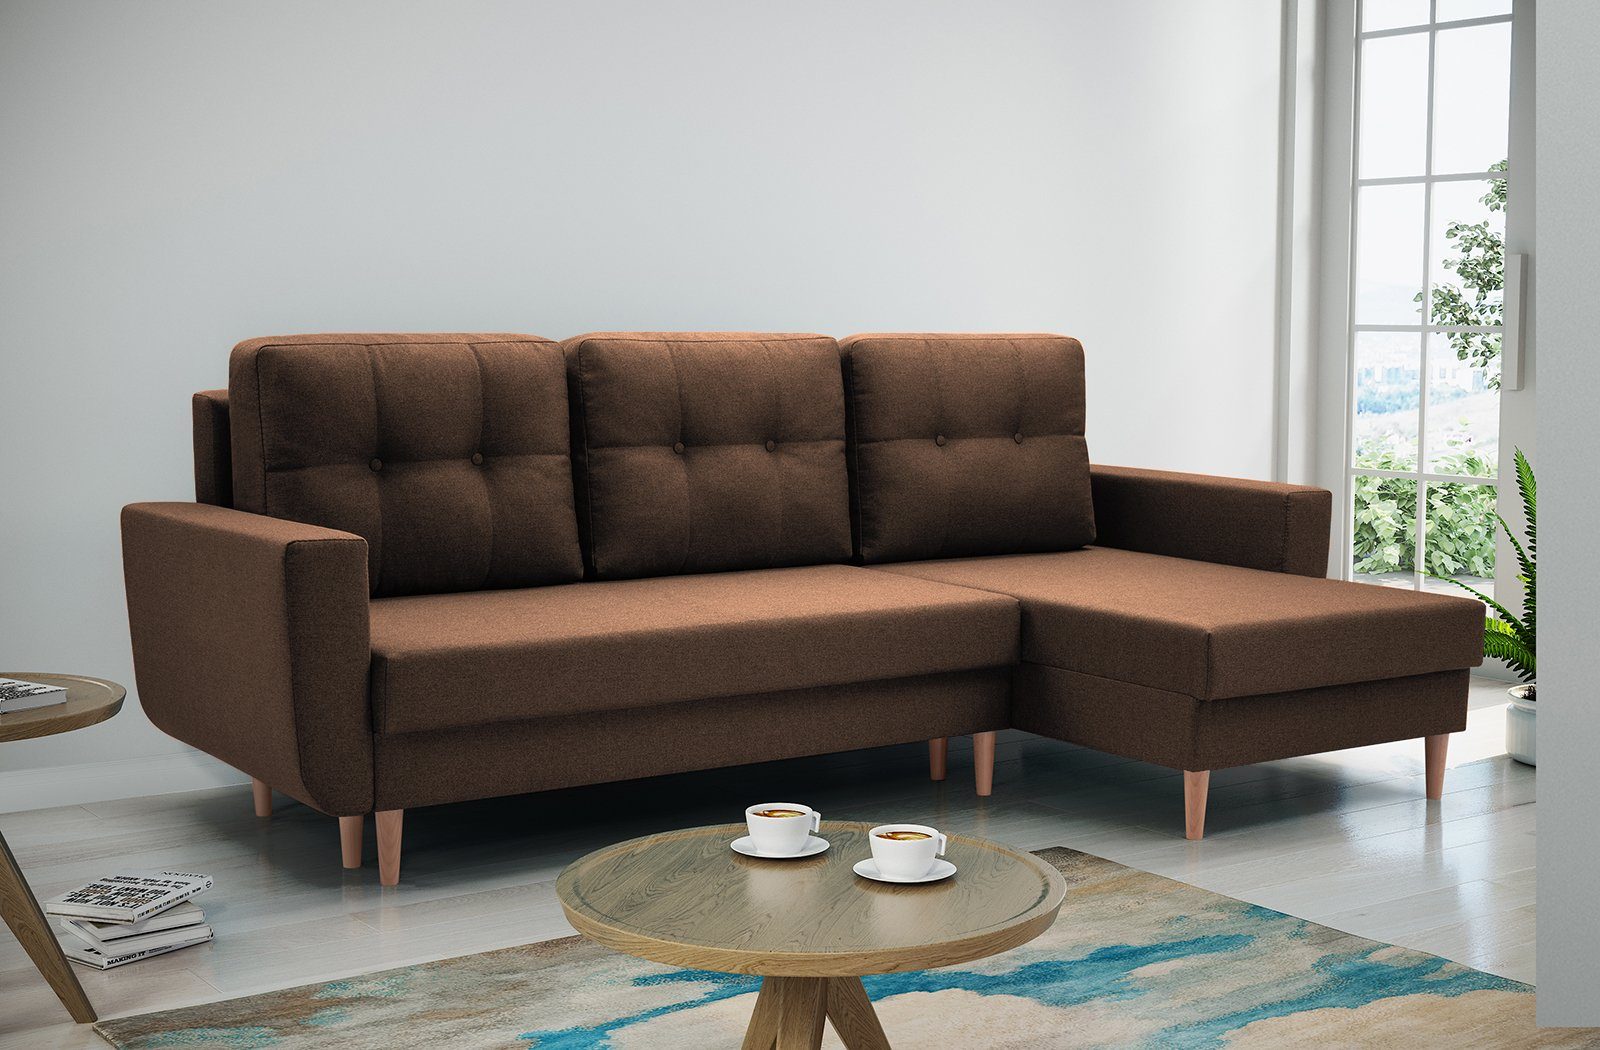 Beautysofa Polsterecke Couch Sofa Ecksofa ONLY, Die Lieferung beinhaltet die Lieferung in die Wohnung, mit Schlaffunktion, mit universelle Ottomane